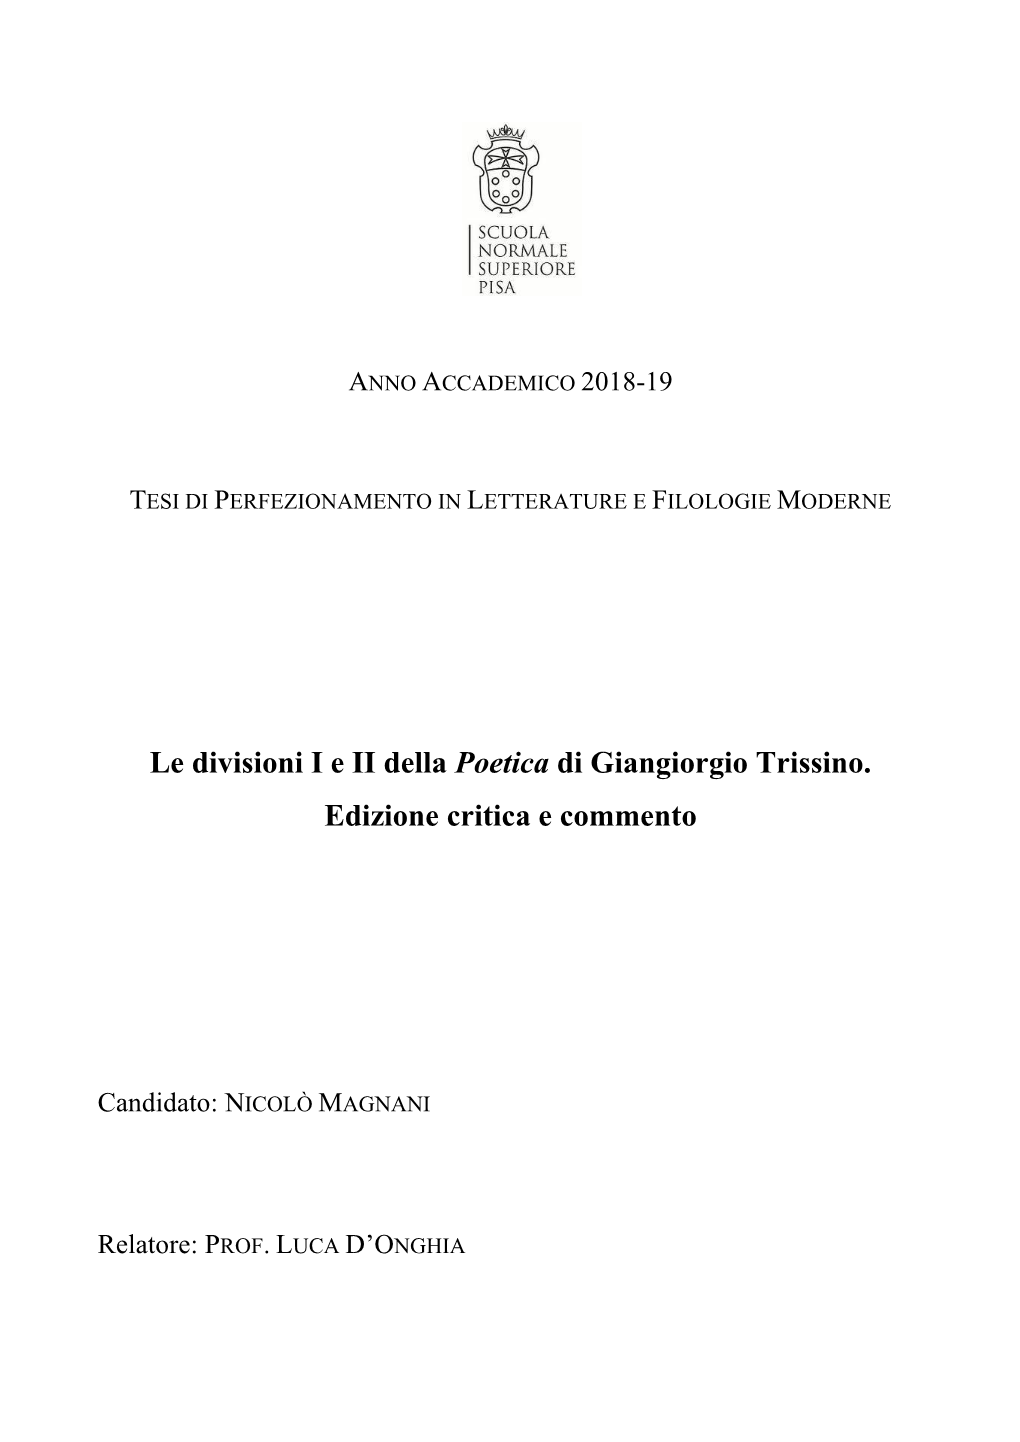 Le Divisioni I E II Della Poetica Di Giangiorgio Trissino. Edizione Critica E Commento